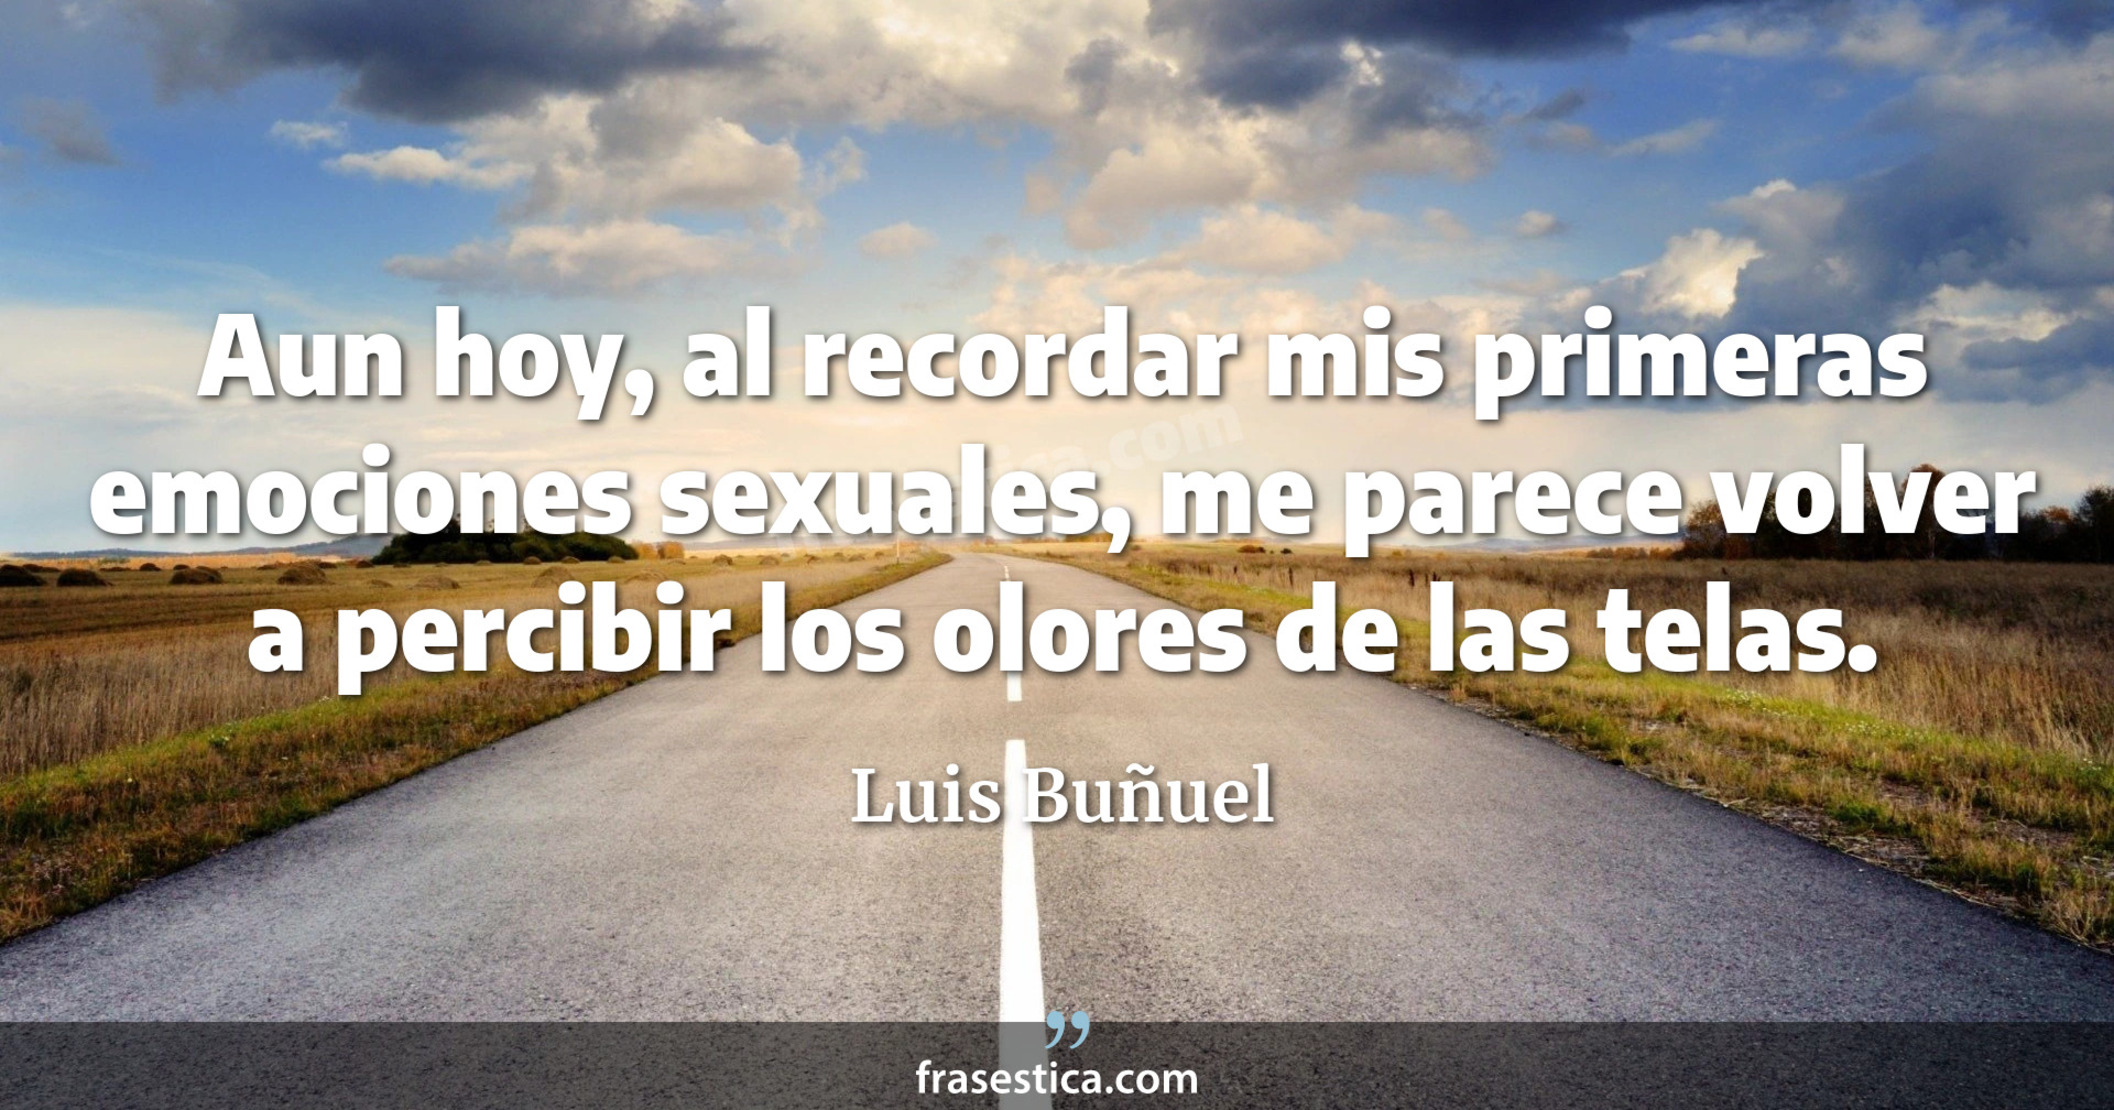 Aun hoy, al recordar mis primeras emociones sexuales, me parece volver a percibir los olores de las telas. - Luis Buñuel